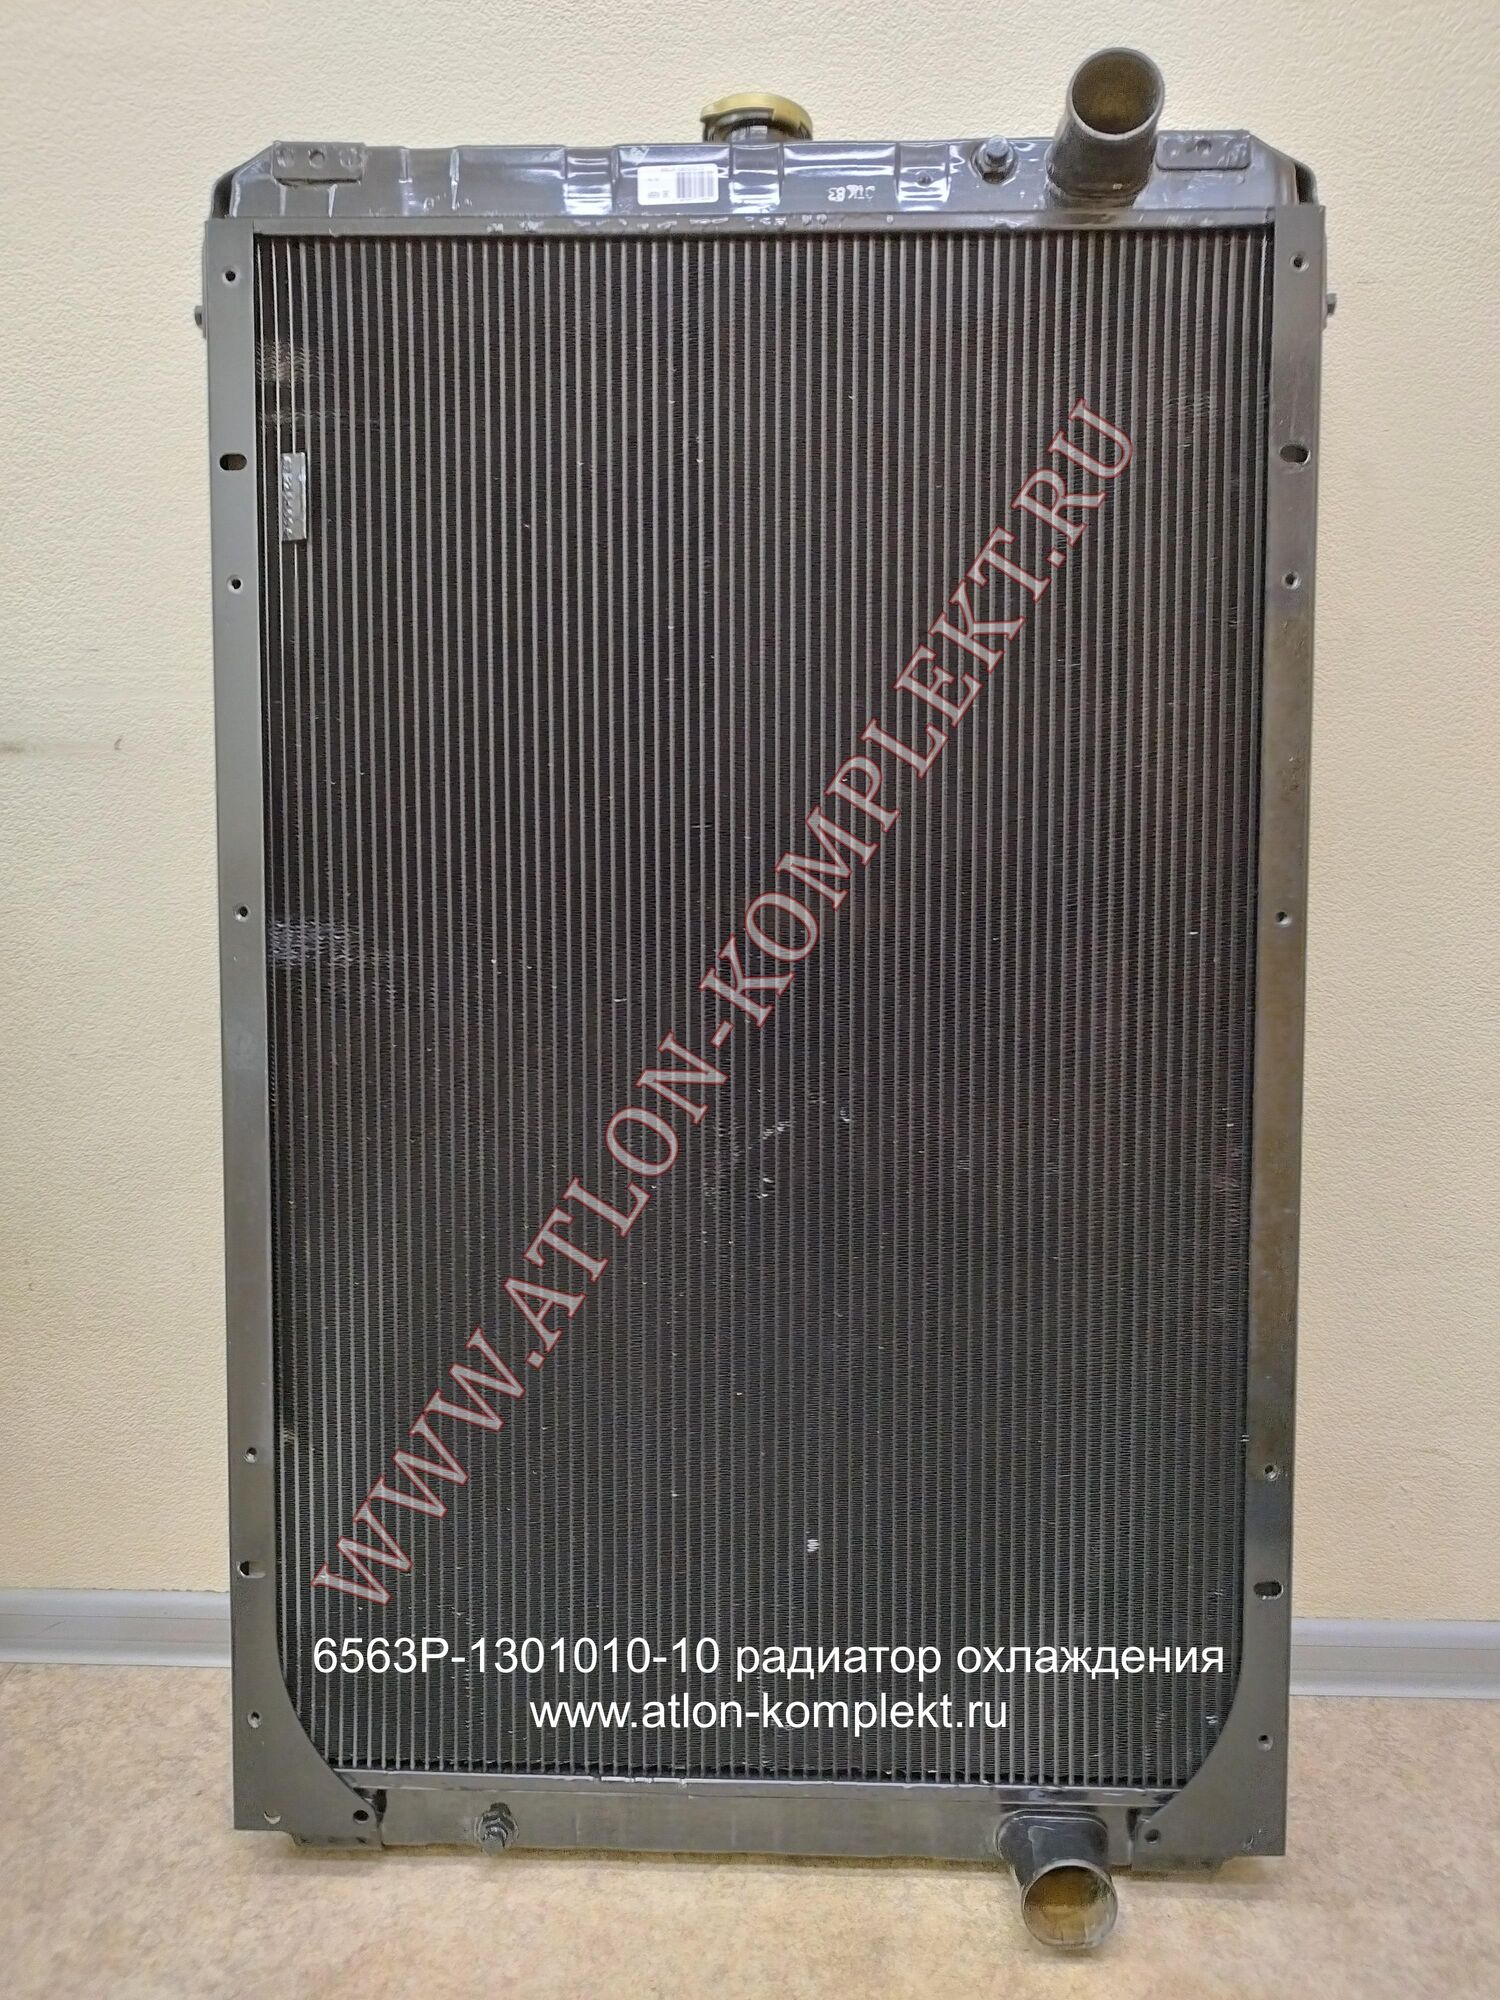 Радиатор УРАЛ 6370 с ЯМЗ-652 медный 6563Р-1301010-10 4-х рядный